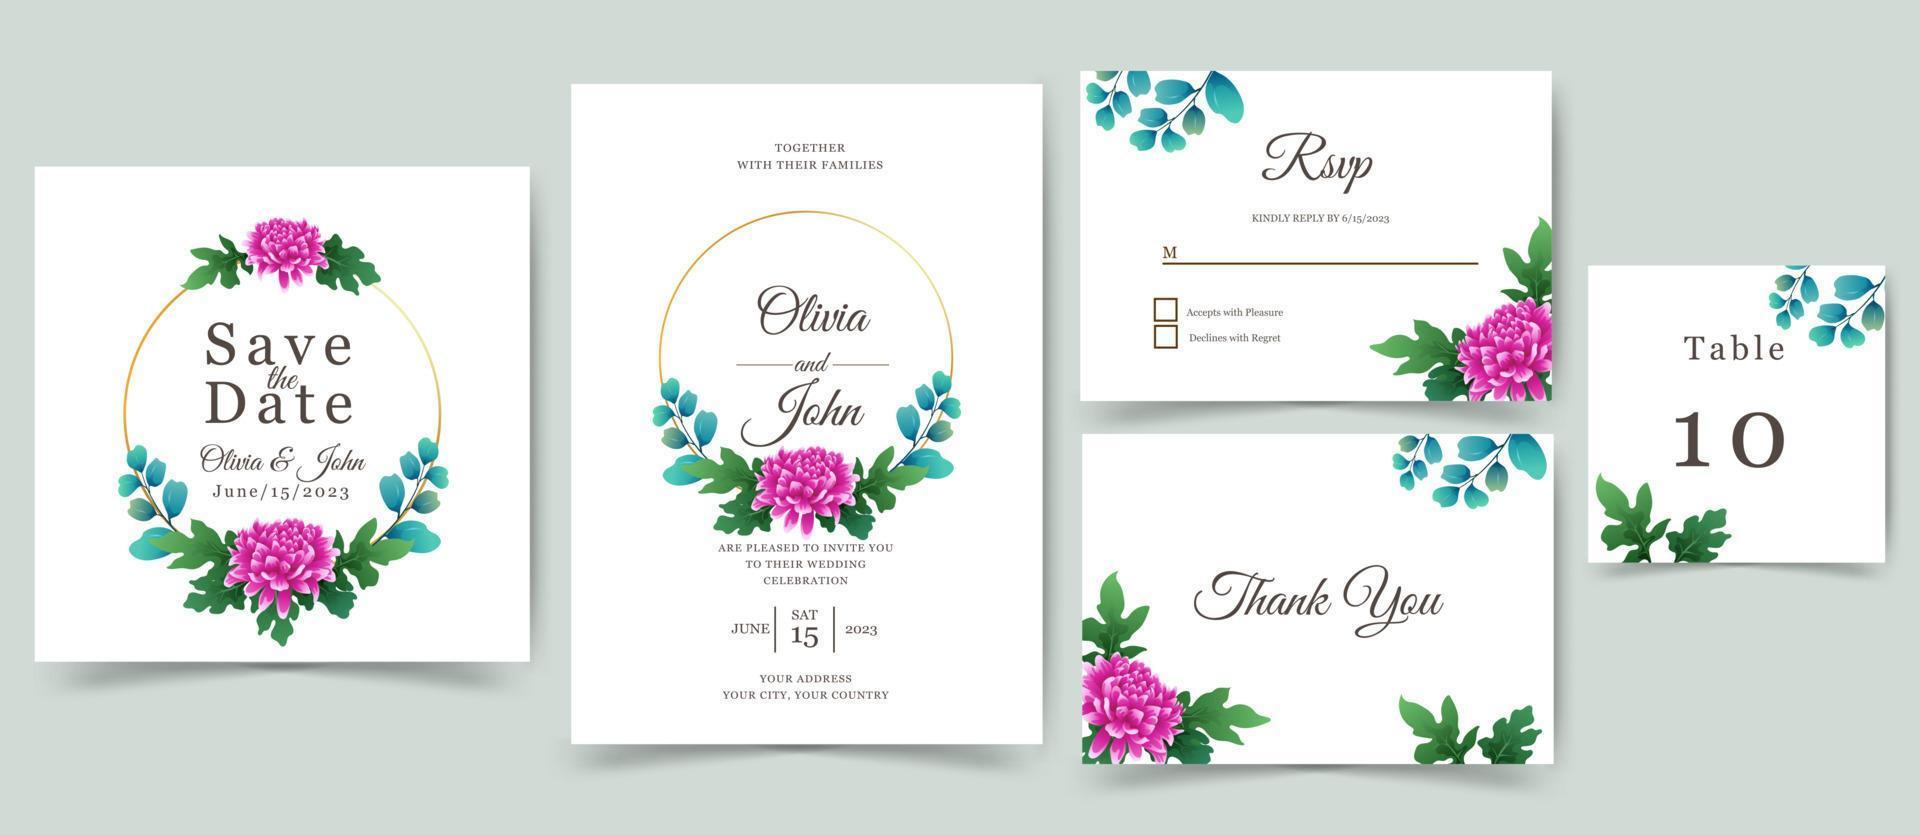 bröllopsinbjudan eller gratulationskort med vackra blommor design. vektor